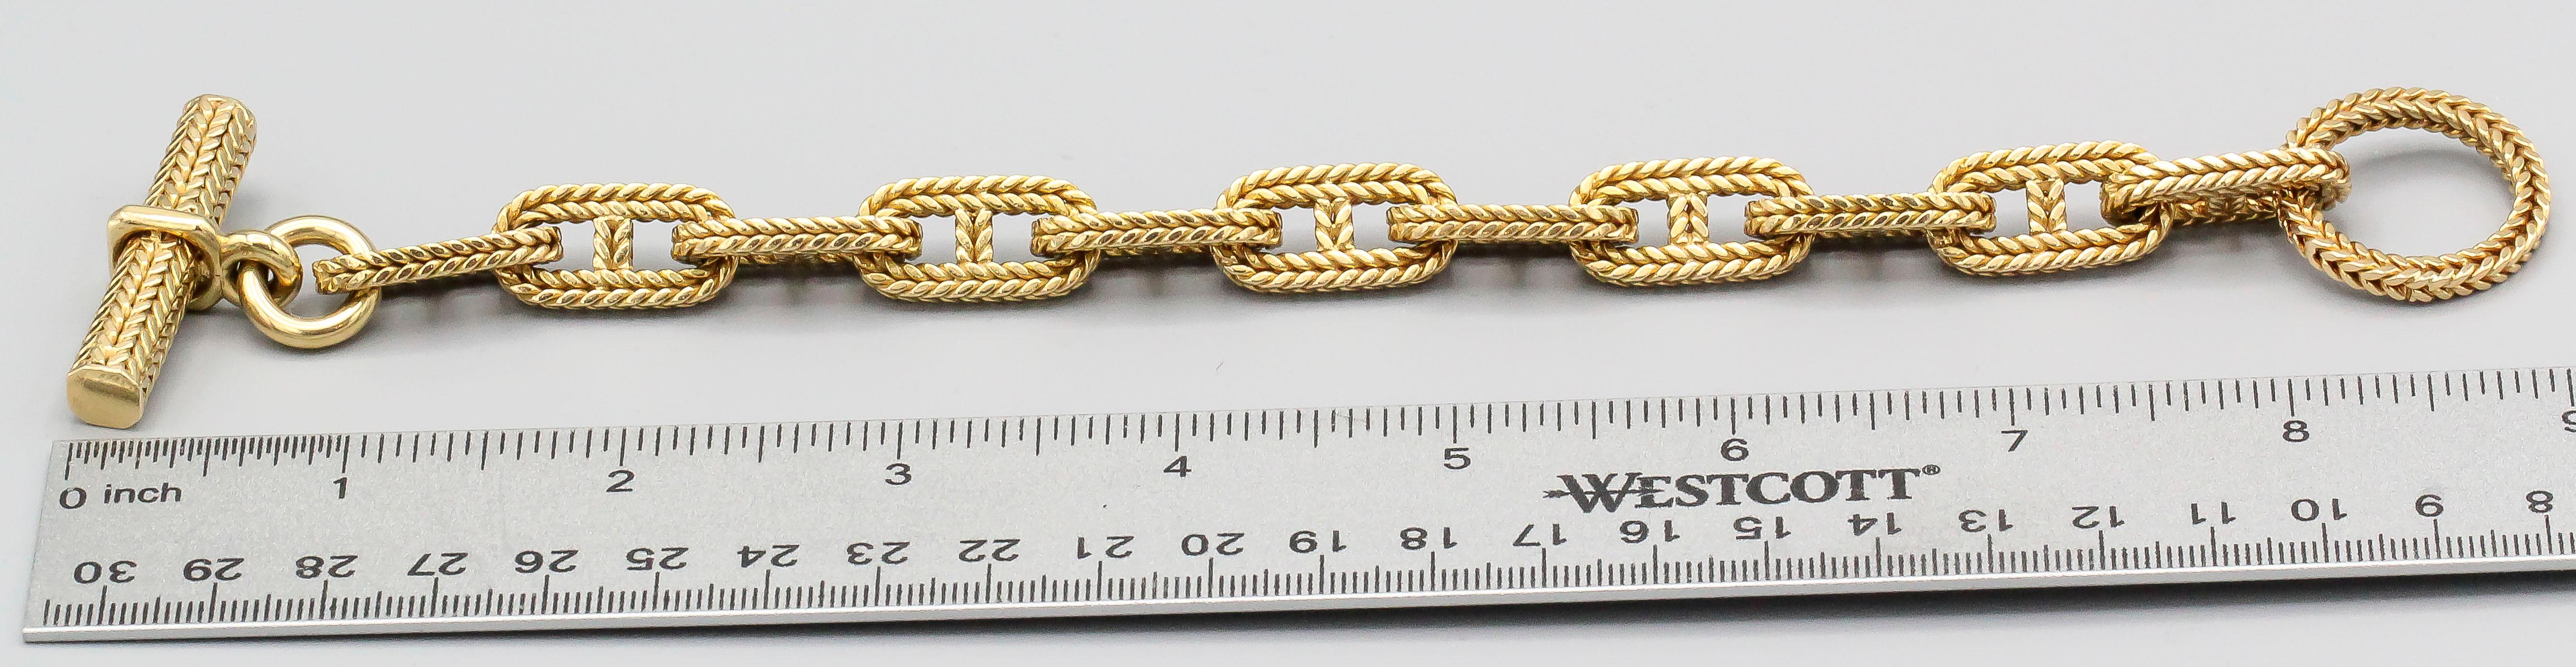 hermes gold chain bracelet